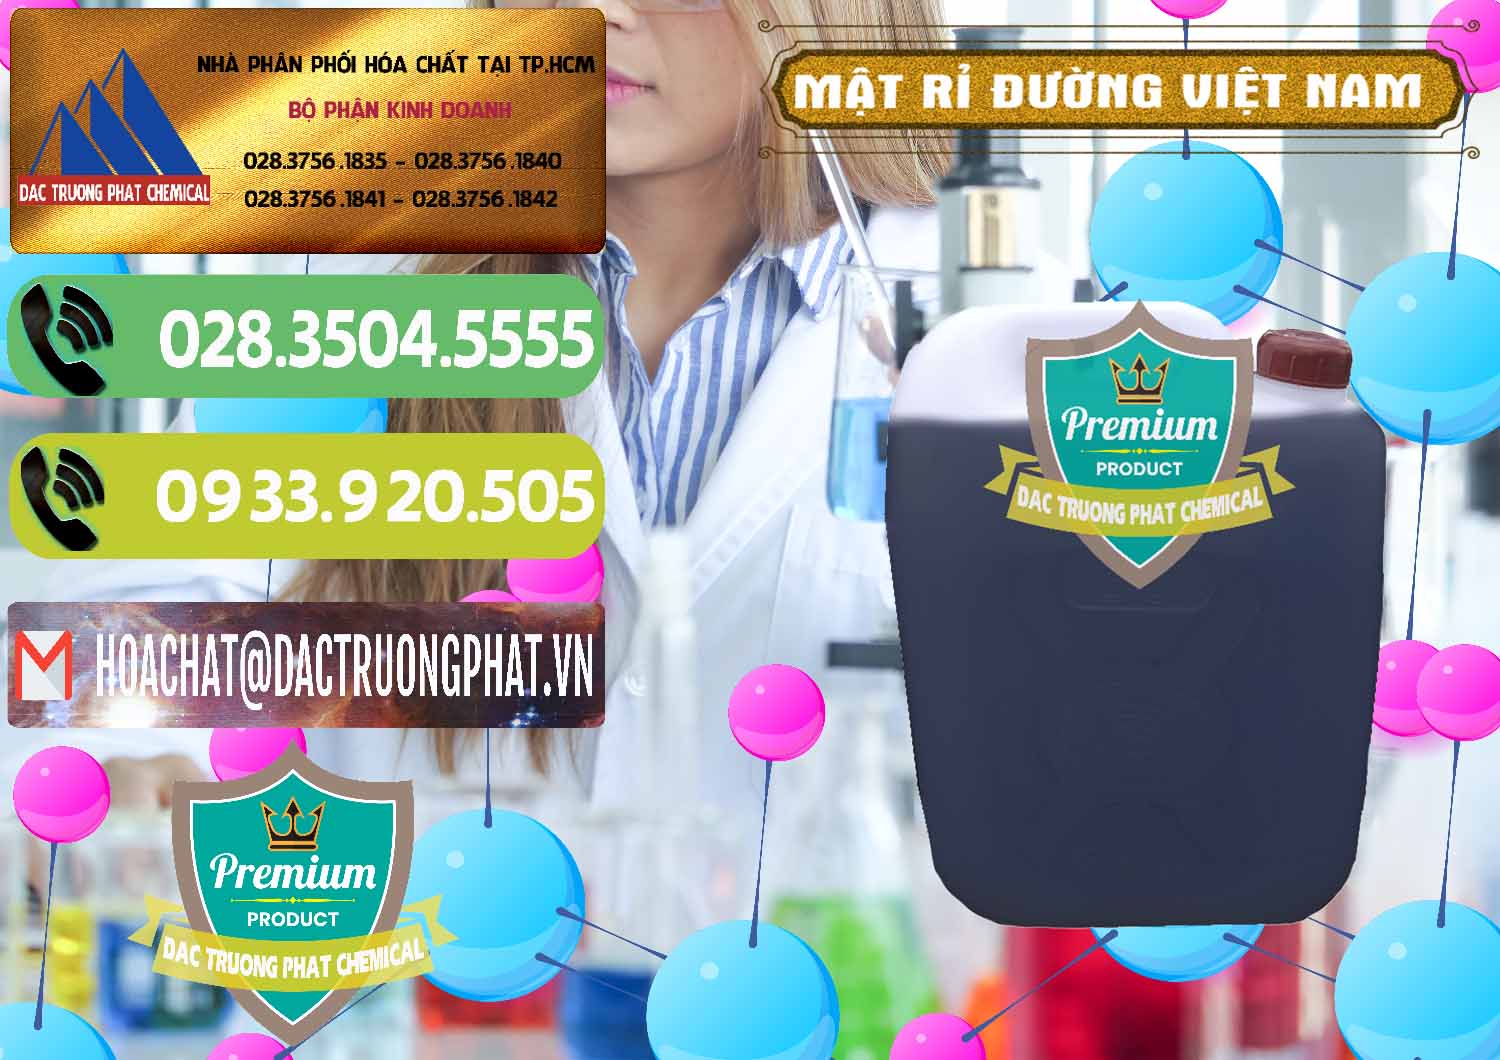 Nhà cung cấp _ kinh doanh Mật Rỉ Đường Việt Nam - 0306 - Nhà phân phối _ kinh doanh hóa chất tại TP.HCM - hoachatmientay.vn